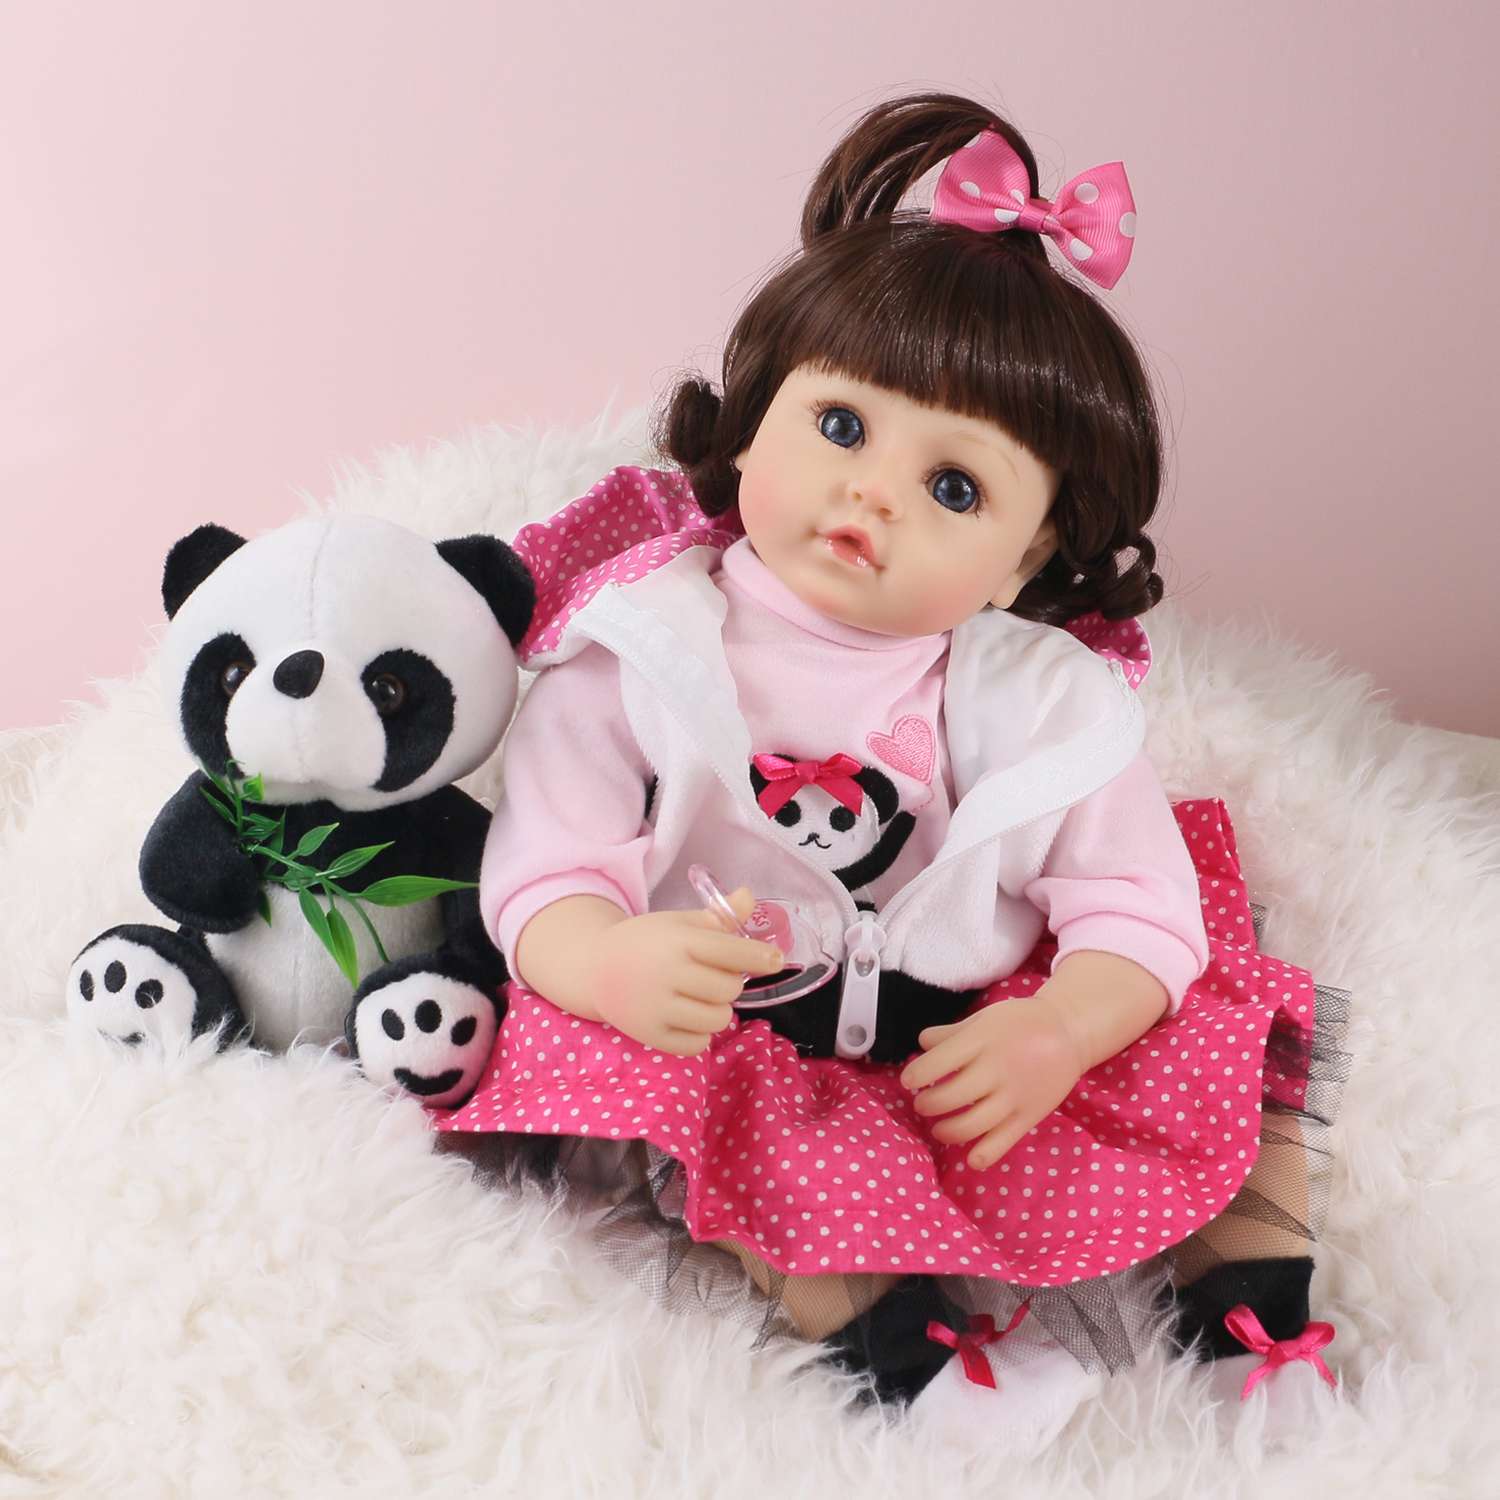 Кукла Реборн QA BABY Алина девочка большая пупс набор игрушки для девочки 42 см 45003 - фото 5